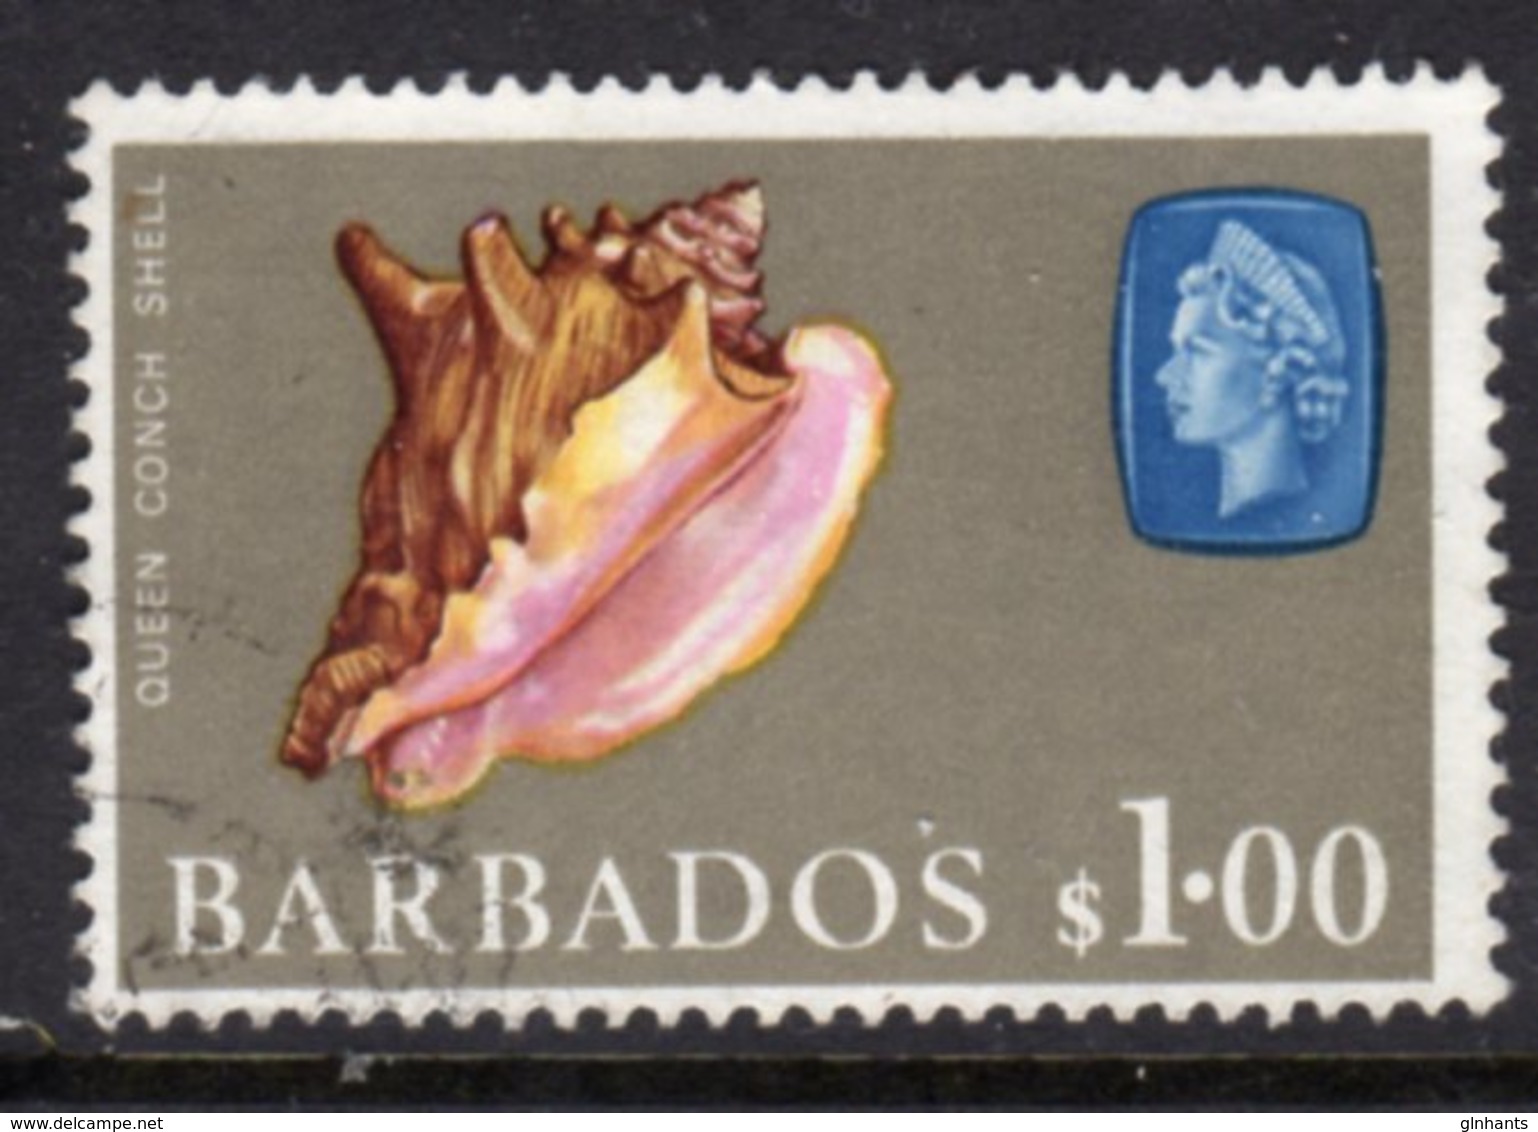 BARBADOS - 1966 $1 DEFINITIVE STAMP WMK W12 SIDEWAYS REF A USED SG 354 - Barbados (...-1966)